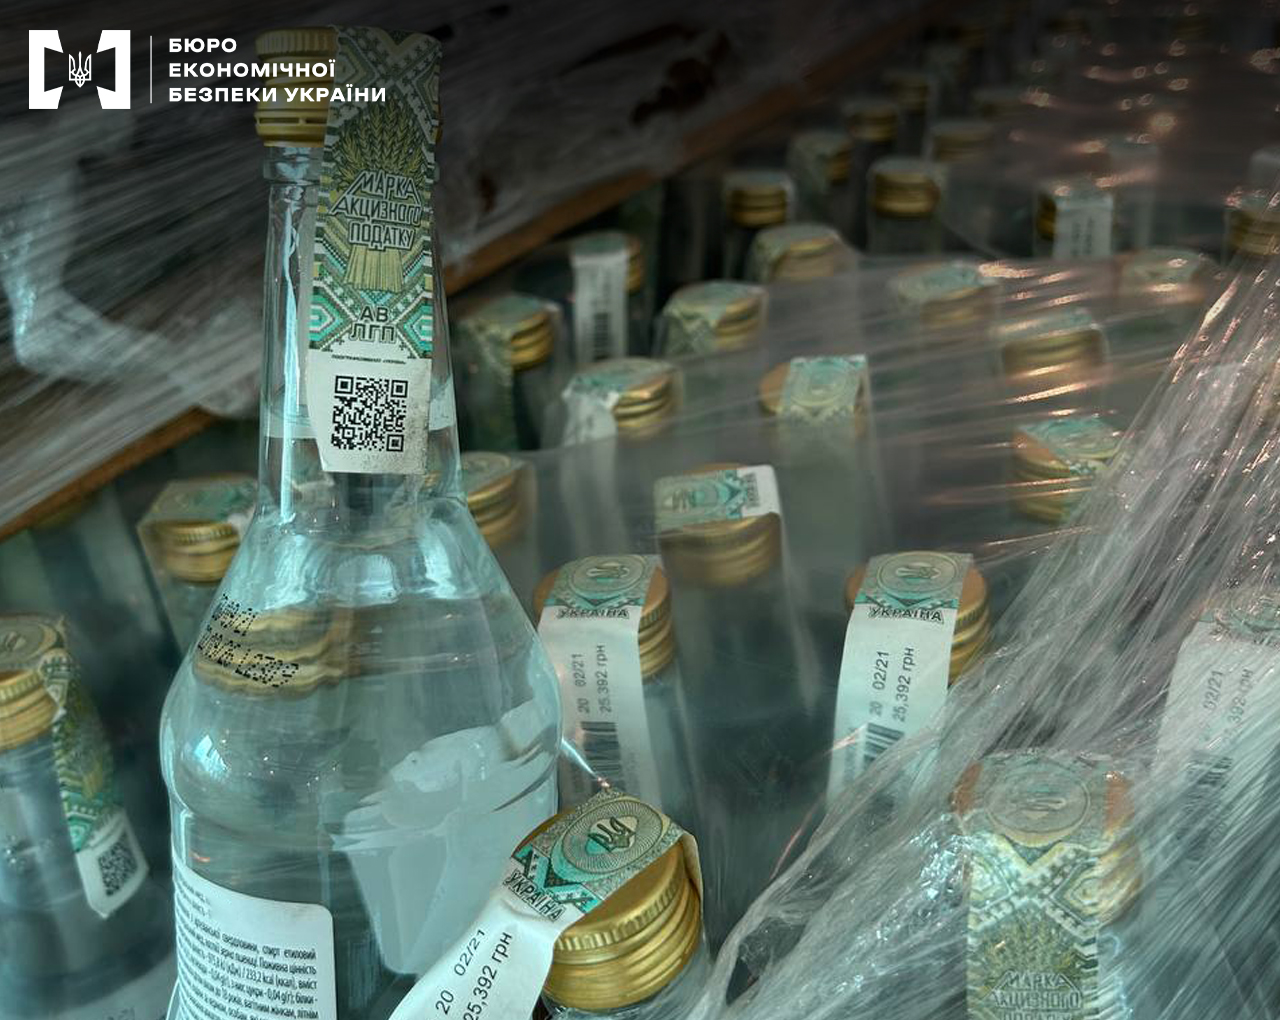 В Тернополе нашли подпольное производство алкоголя. Его продавали в 300 магазинах Львова